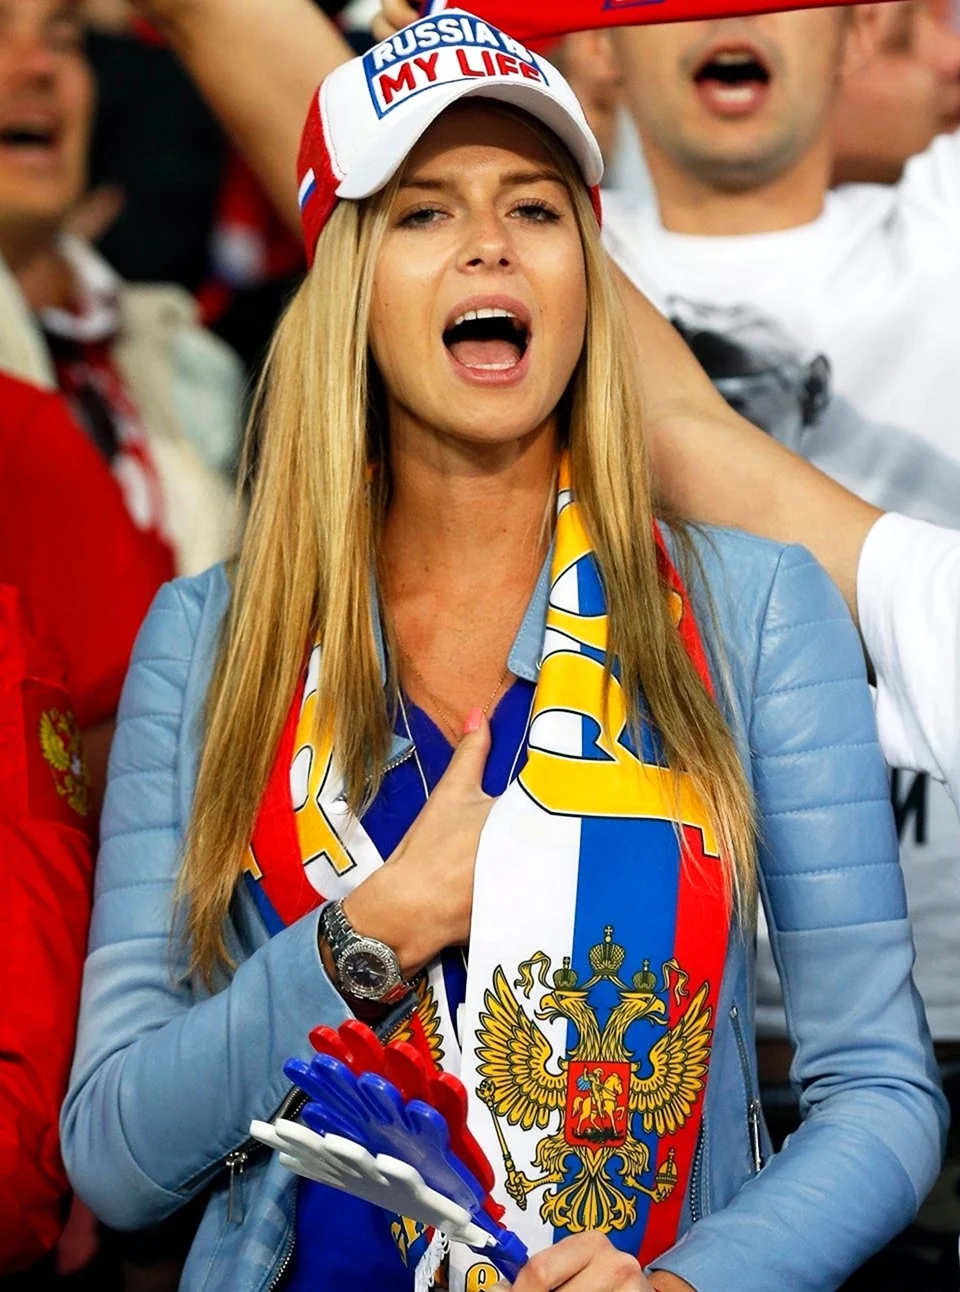 Российские футбольные болельщицы ЧМ 2018. Красивая девушка